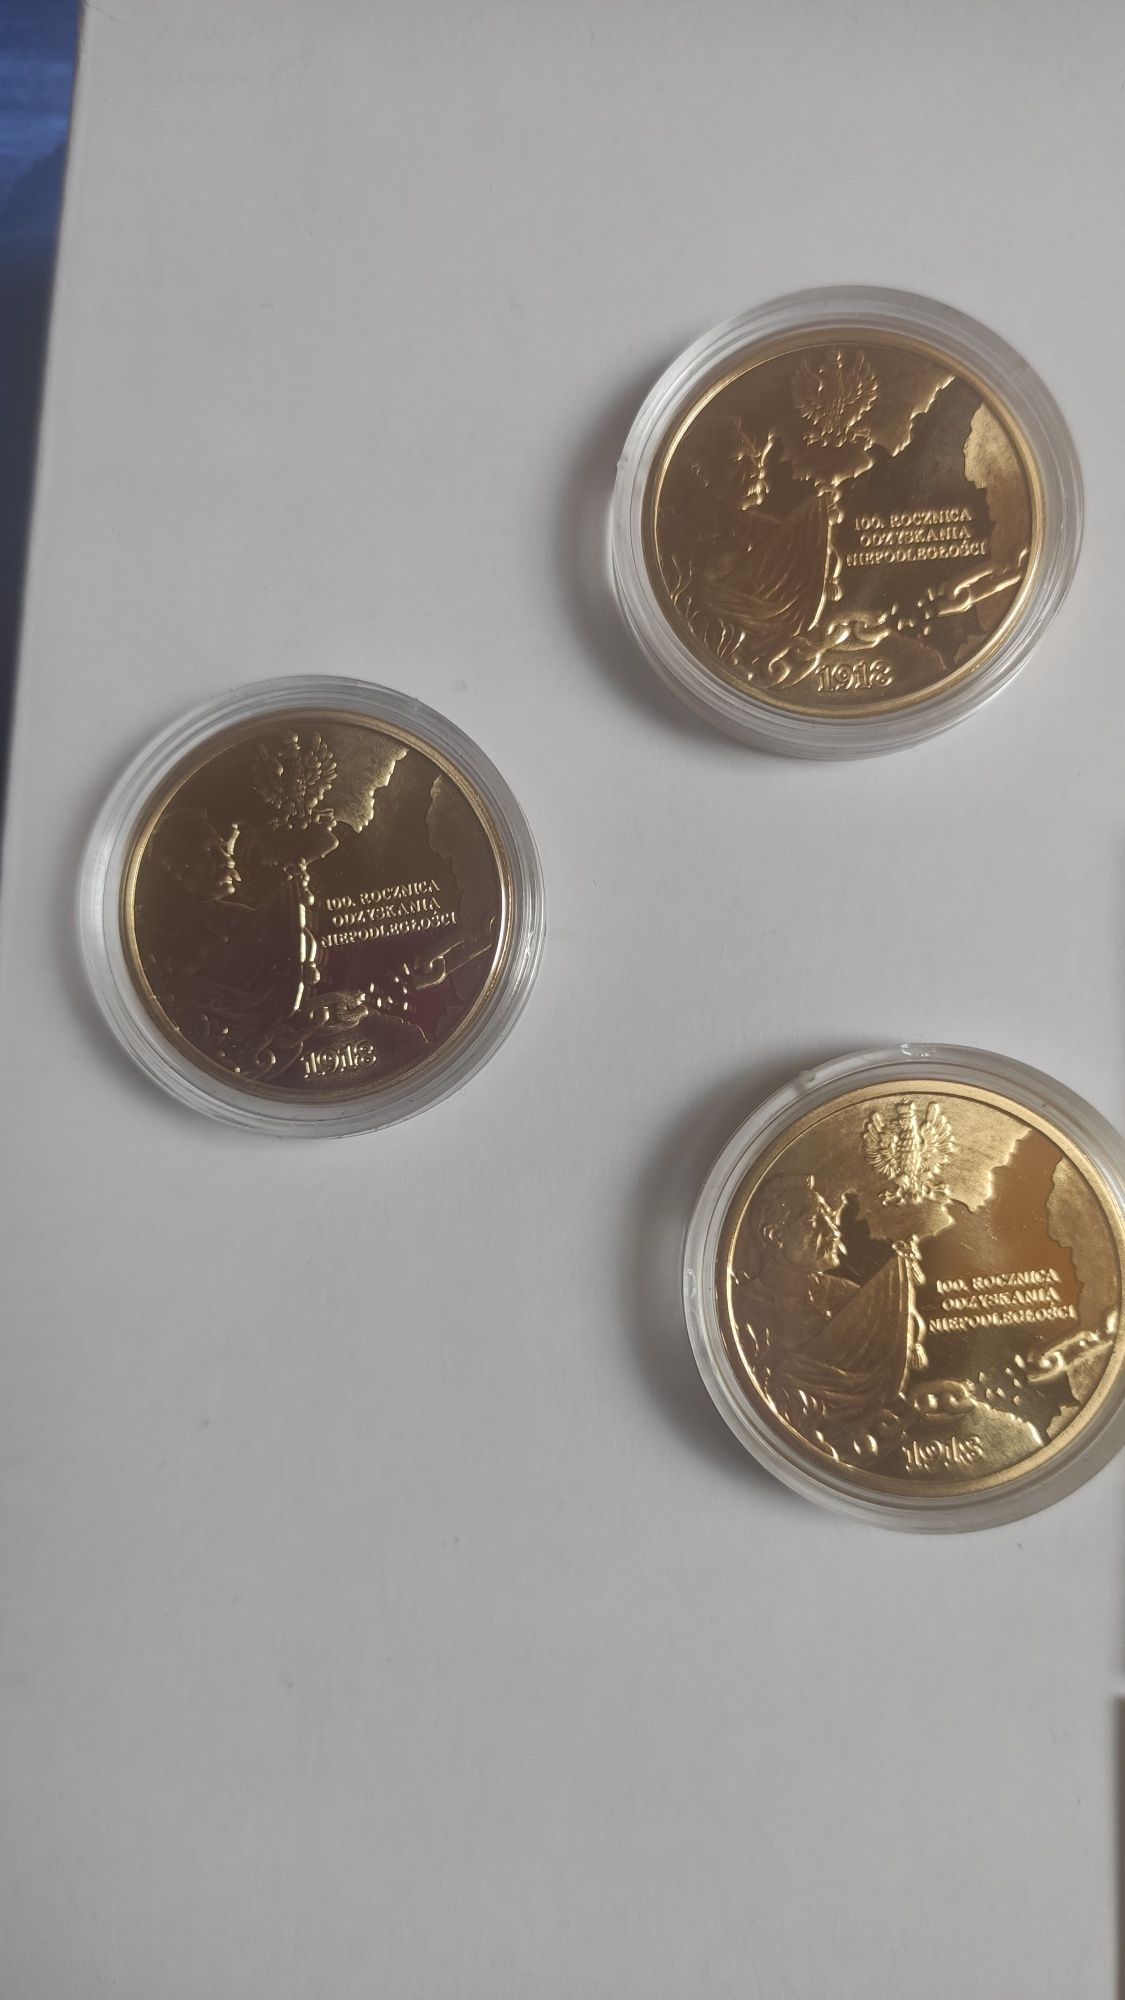 Setna rocznica odzyskania niepodległości moneta kolekcjonerska